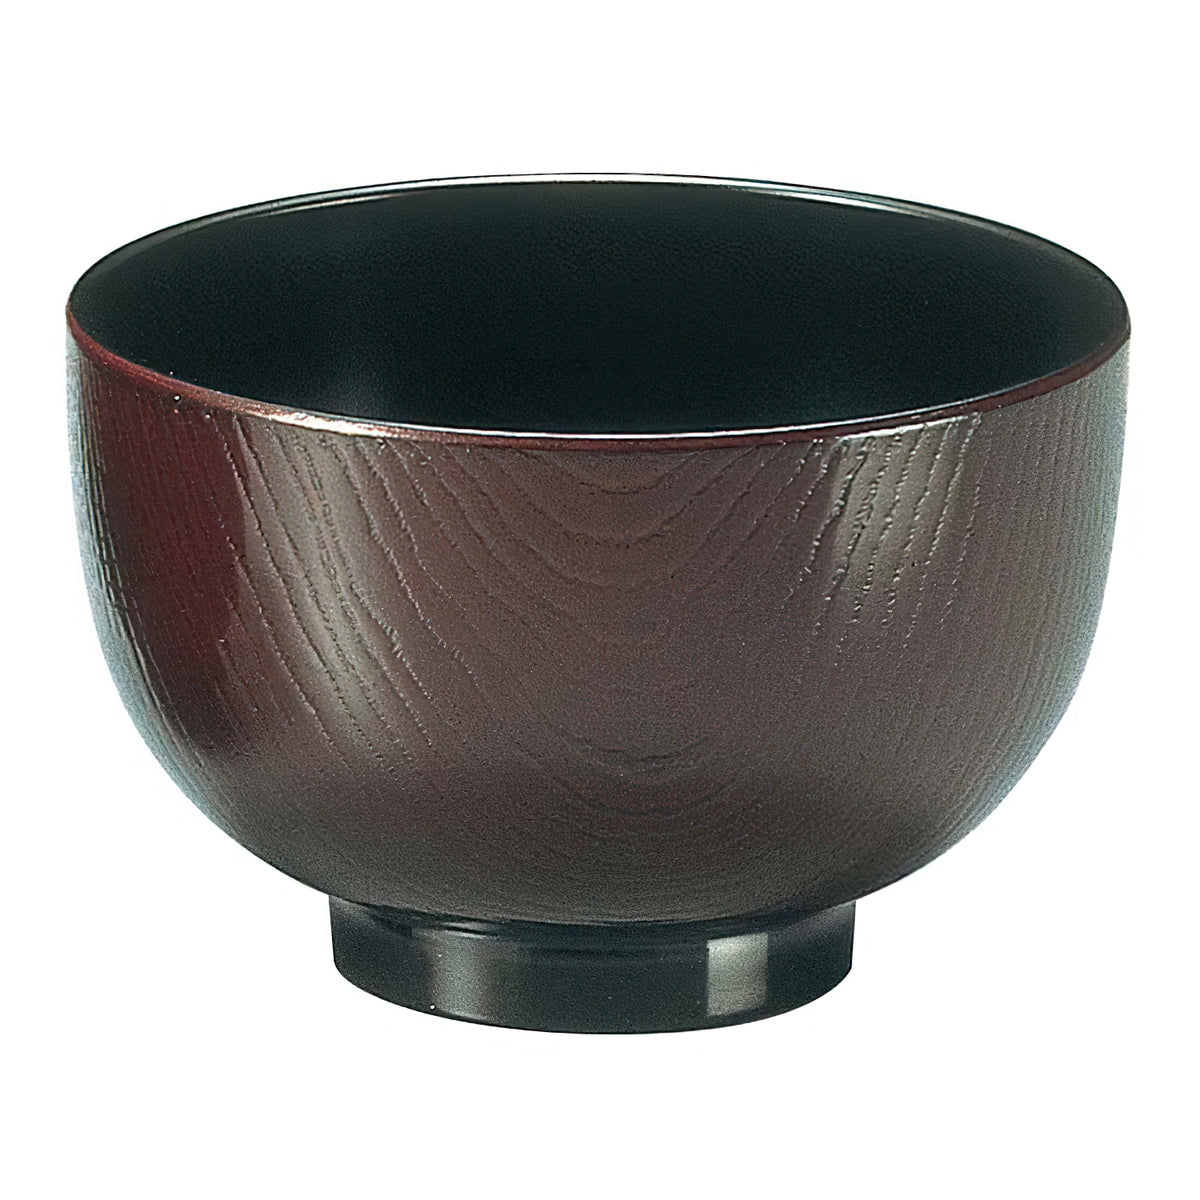 Fukui Craft ABS Resin Wood Grain Soup Bowl 10.5cm